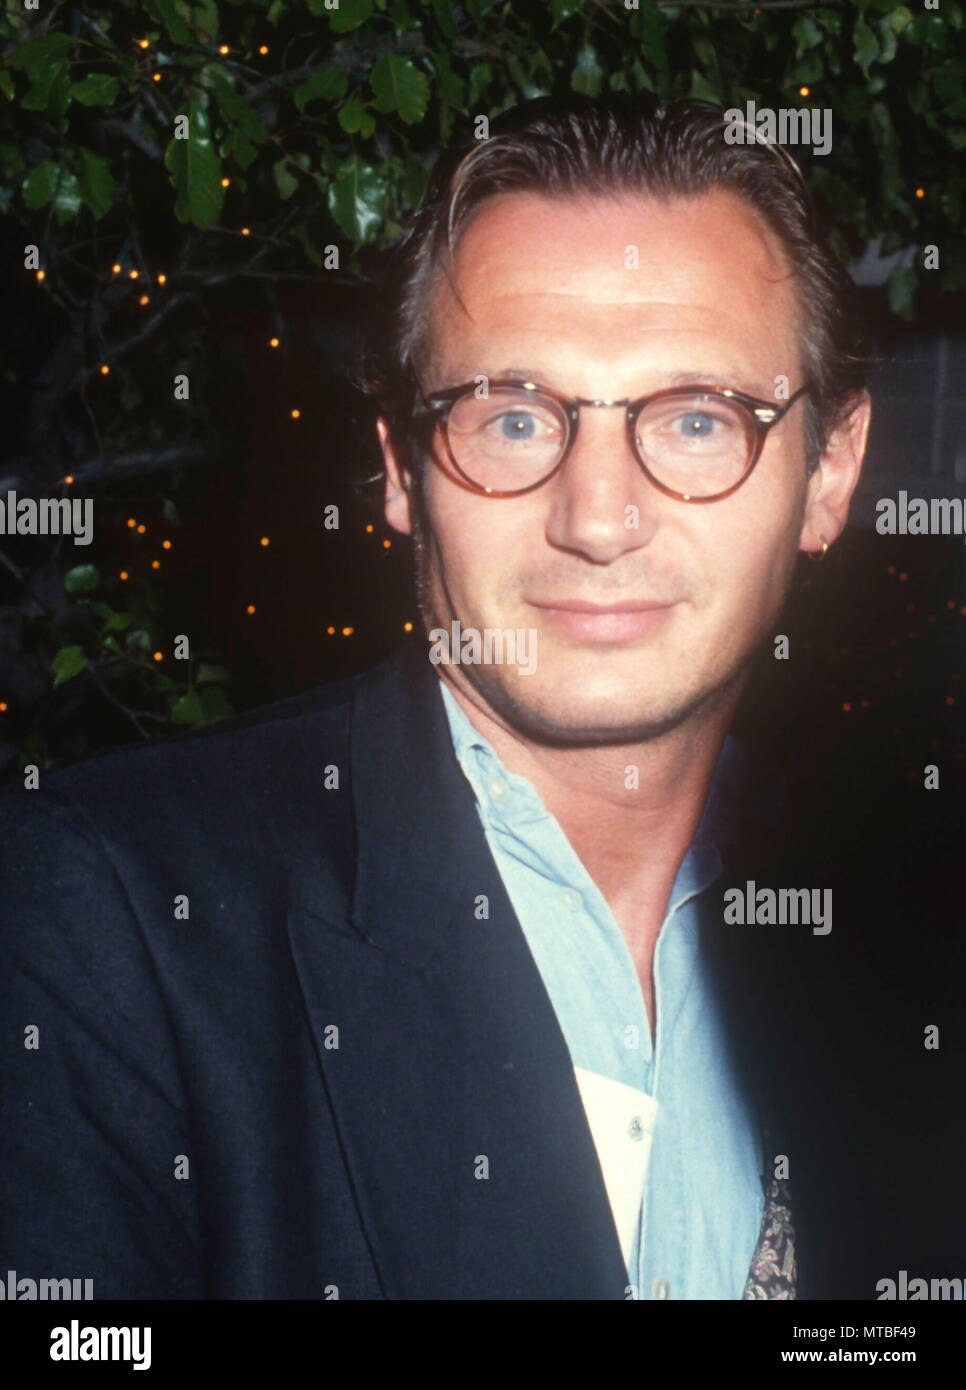 LOS ANGELES, CA - le 10 juin : l'Acteur Liam Neeson assiste à la "Robin Hood : Prince of Thieves' Westwood Création le 10 juin 1991, à l'Mann Village et Bruin Theatres à Los Angeles, Californie. Photo de Barry King/Alamy Stock Photo Banque D'Images